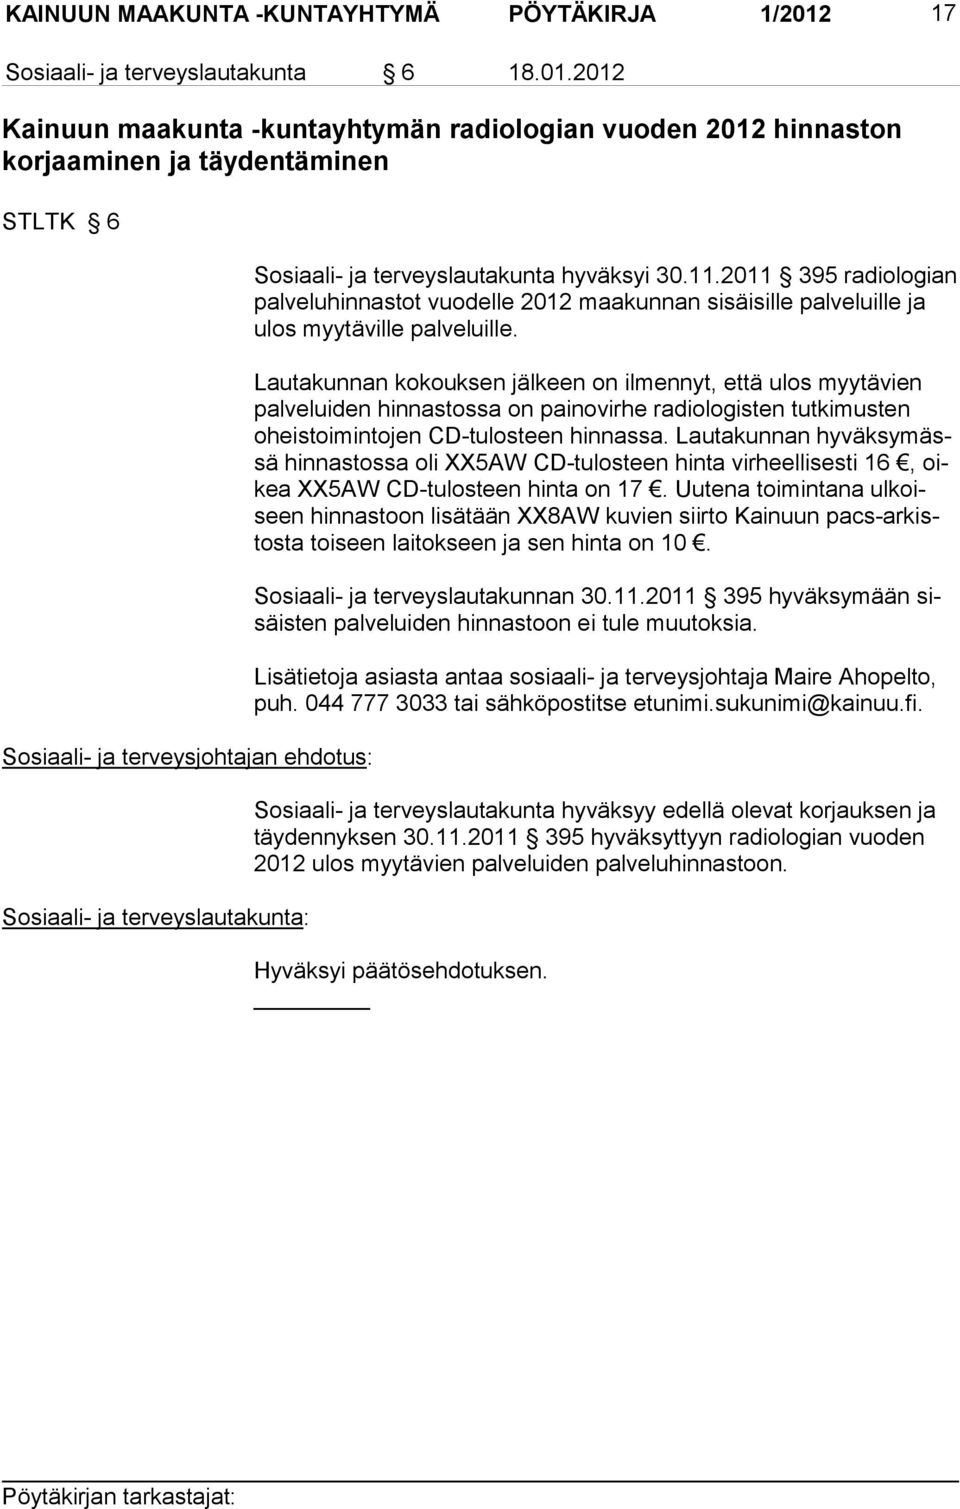 2012 Kainuun maakunta -kuntayhtymän radiologian vuoden 2012 hinnaston korjaaminen ja täydentäminen STLTK 6 Sosiaali- ja terveysjohtajan ehdotus: Sosiaali- ja terveyslautakunta: Sosiaali- ja